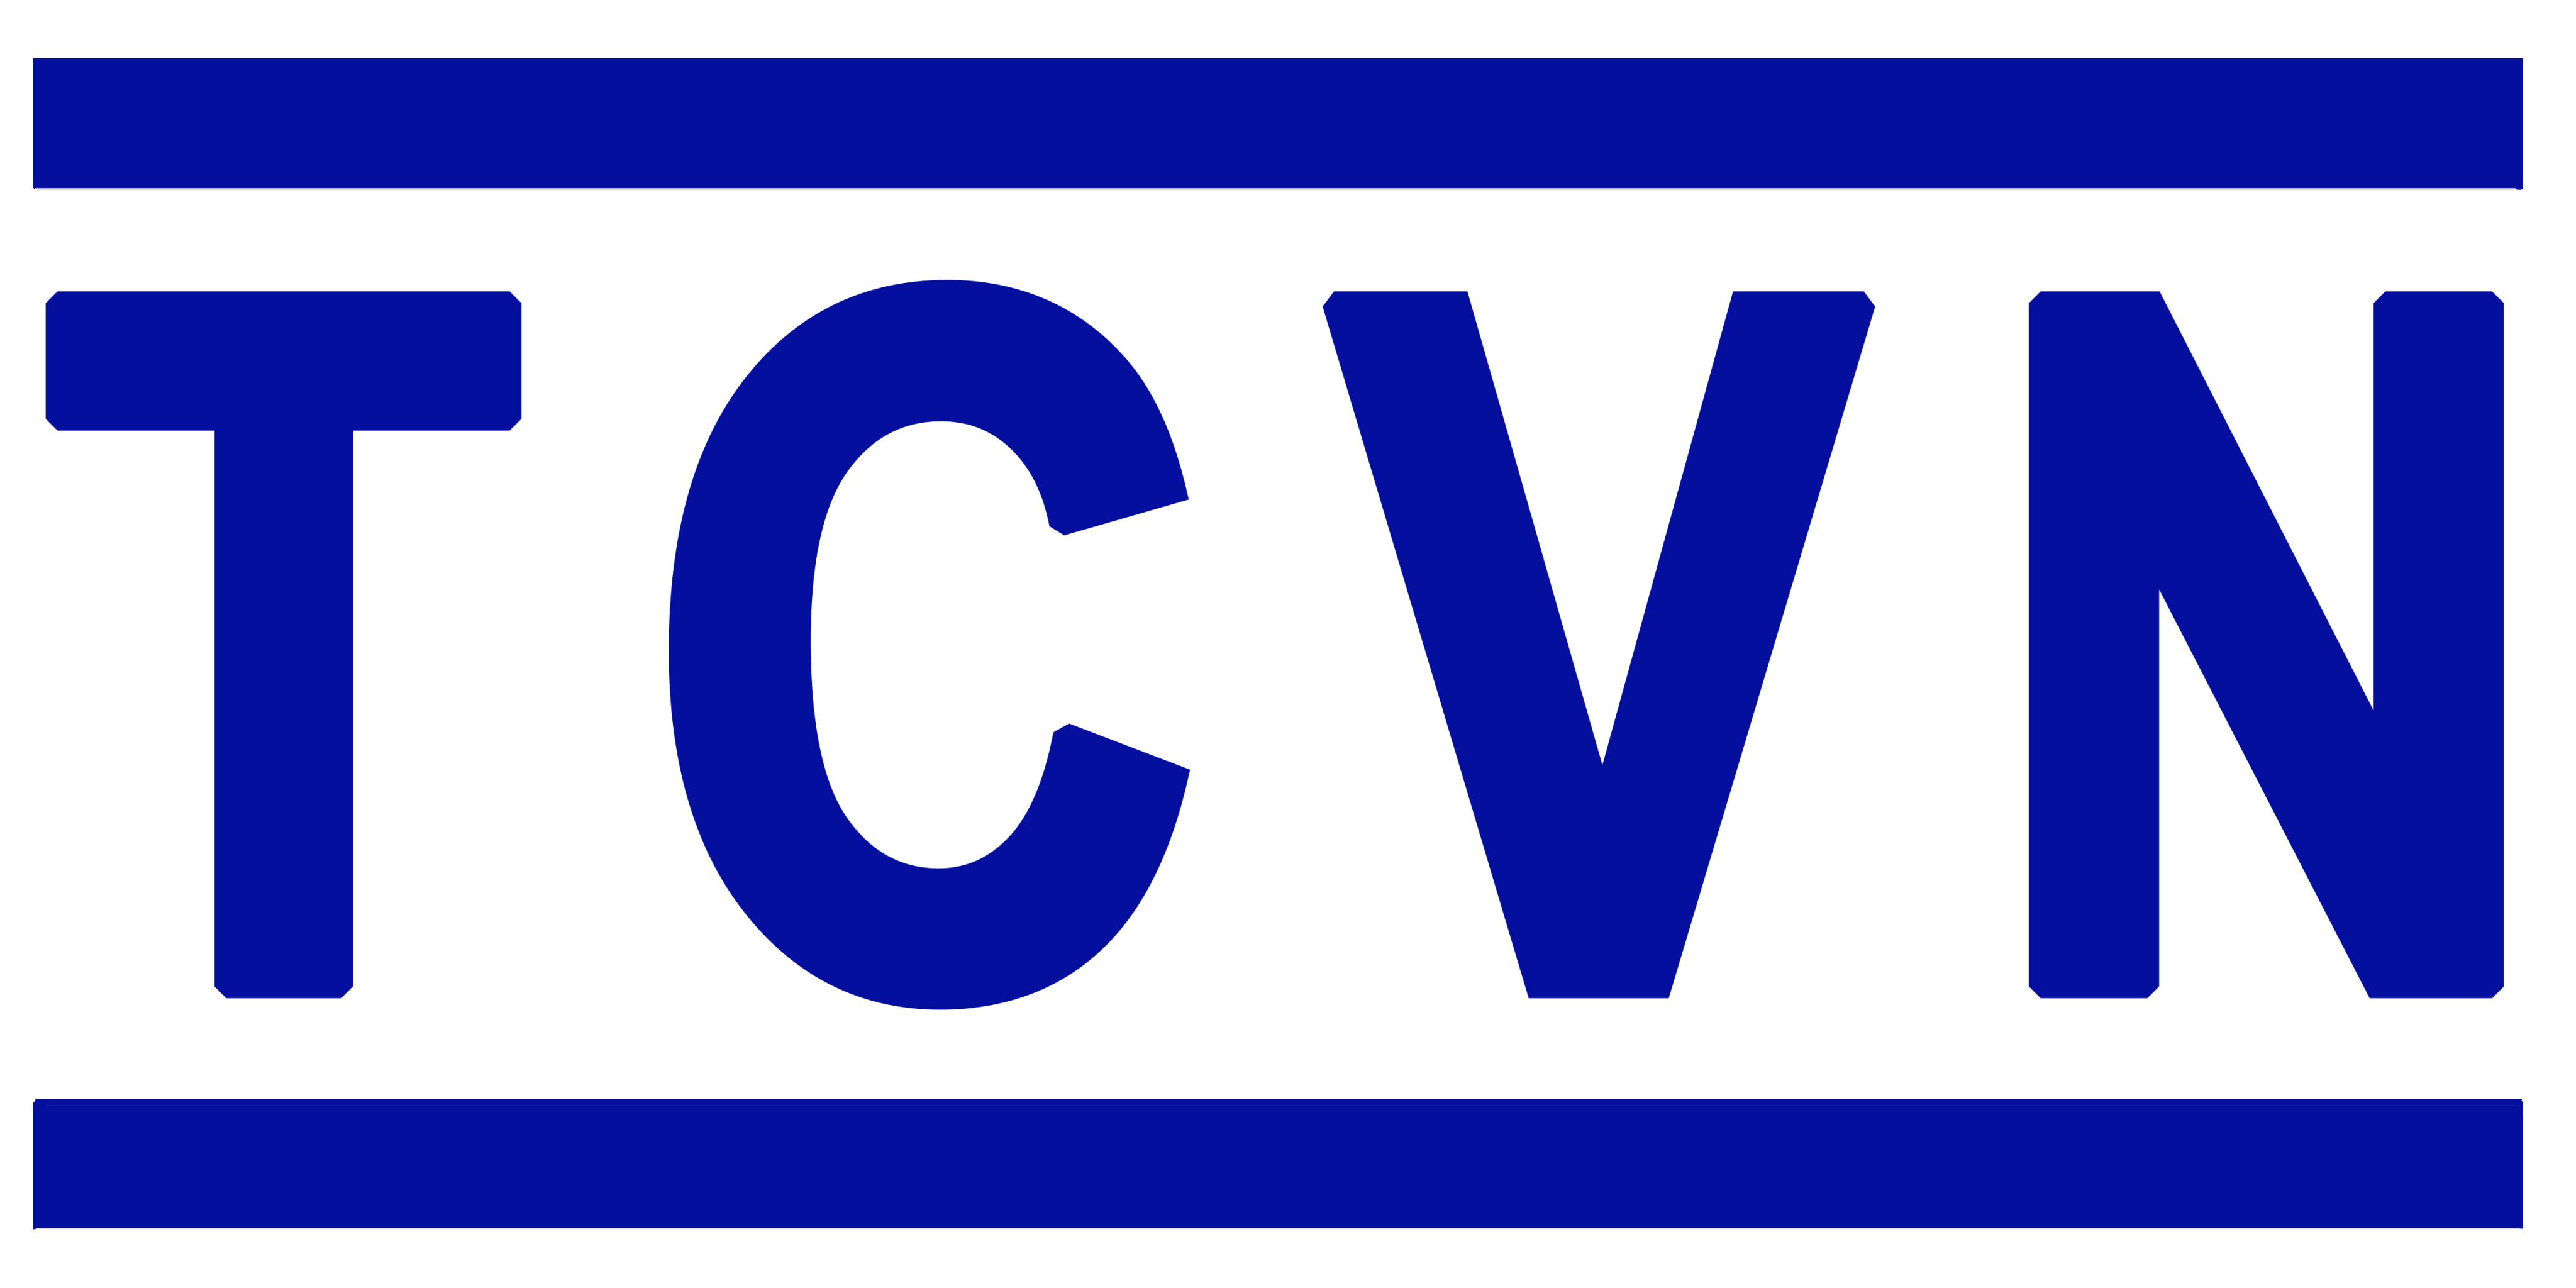 Danh mục tiêu chuẩn Quốc Gia (TCVN) công bố tháng 1 năm 2021